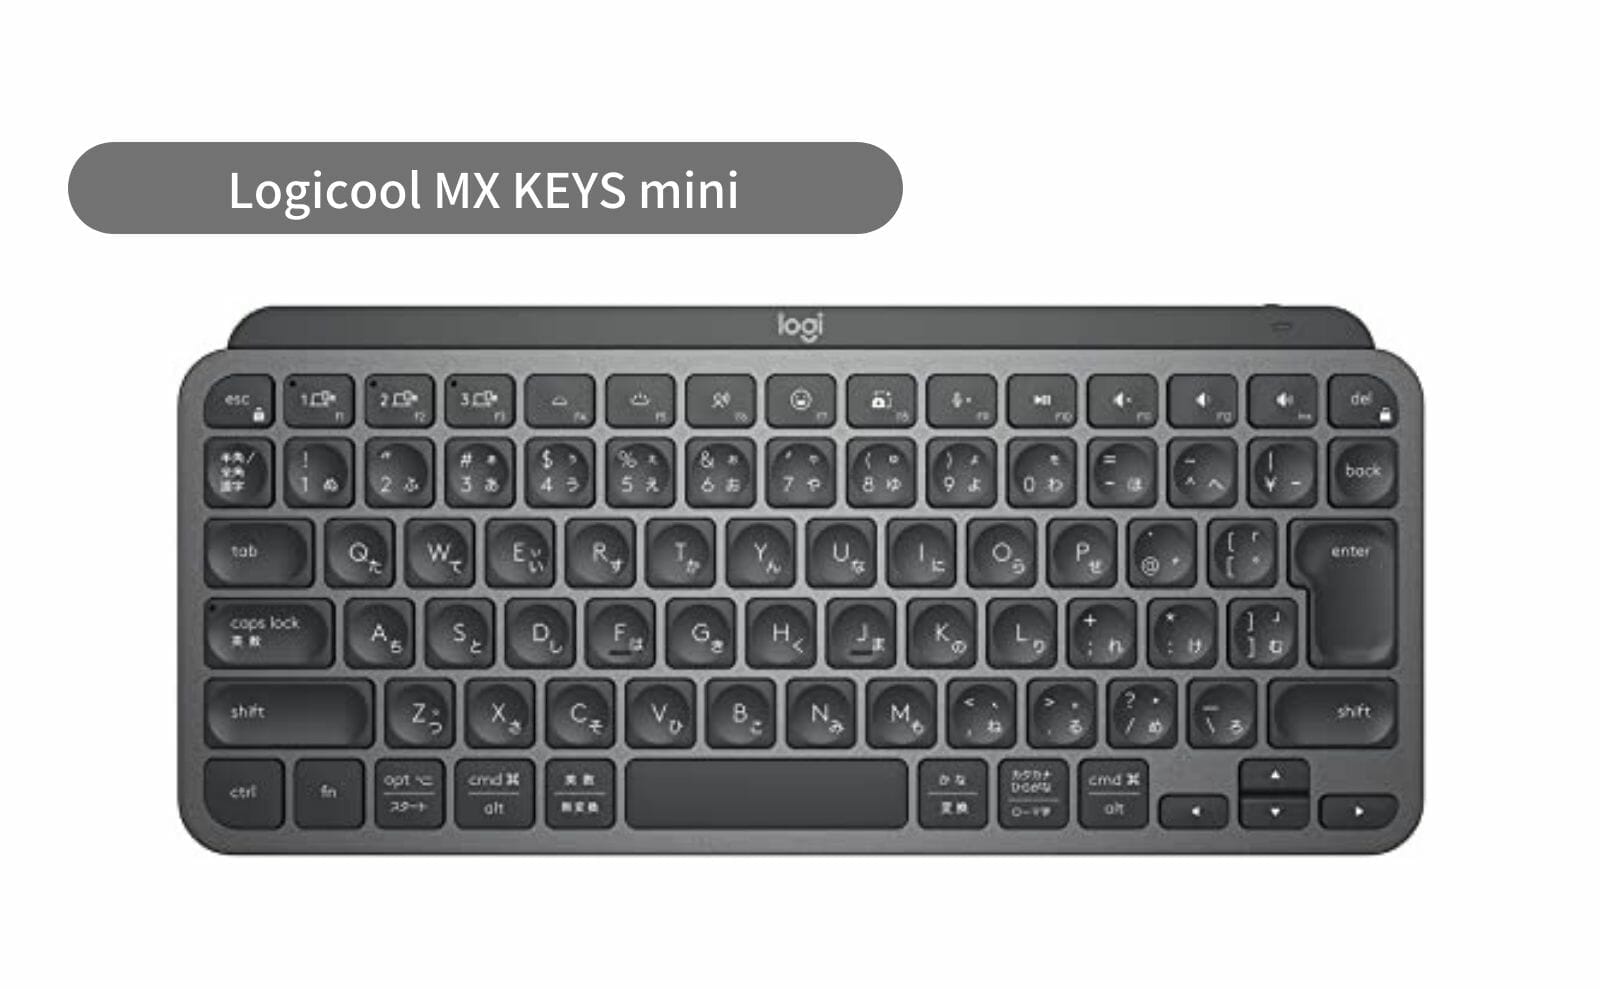 ロジクールMX KEYS MINIシリーズから待望のMac専用仕様「KX700MPG」が